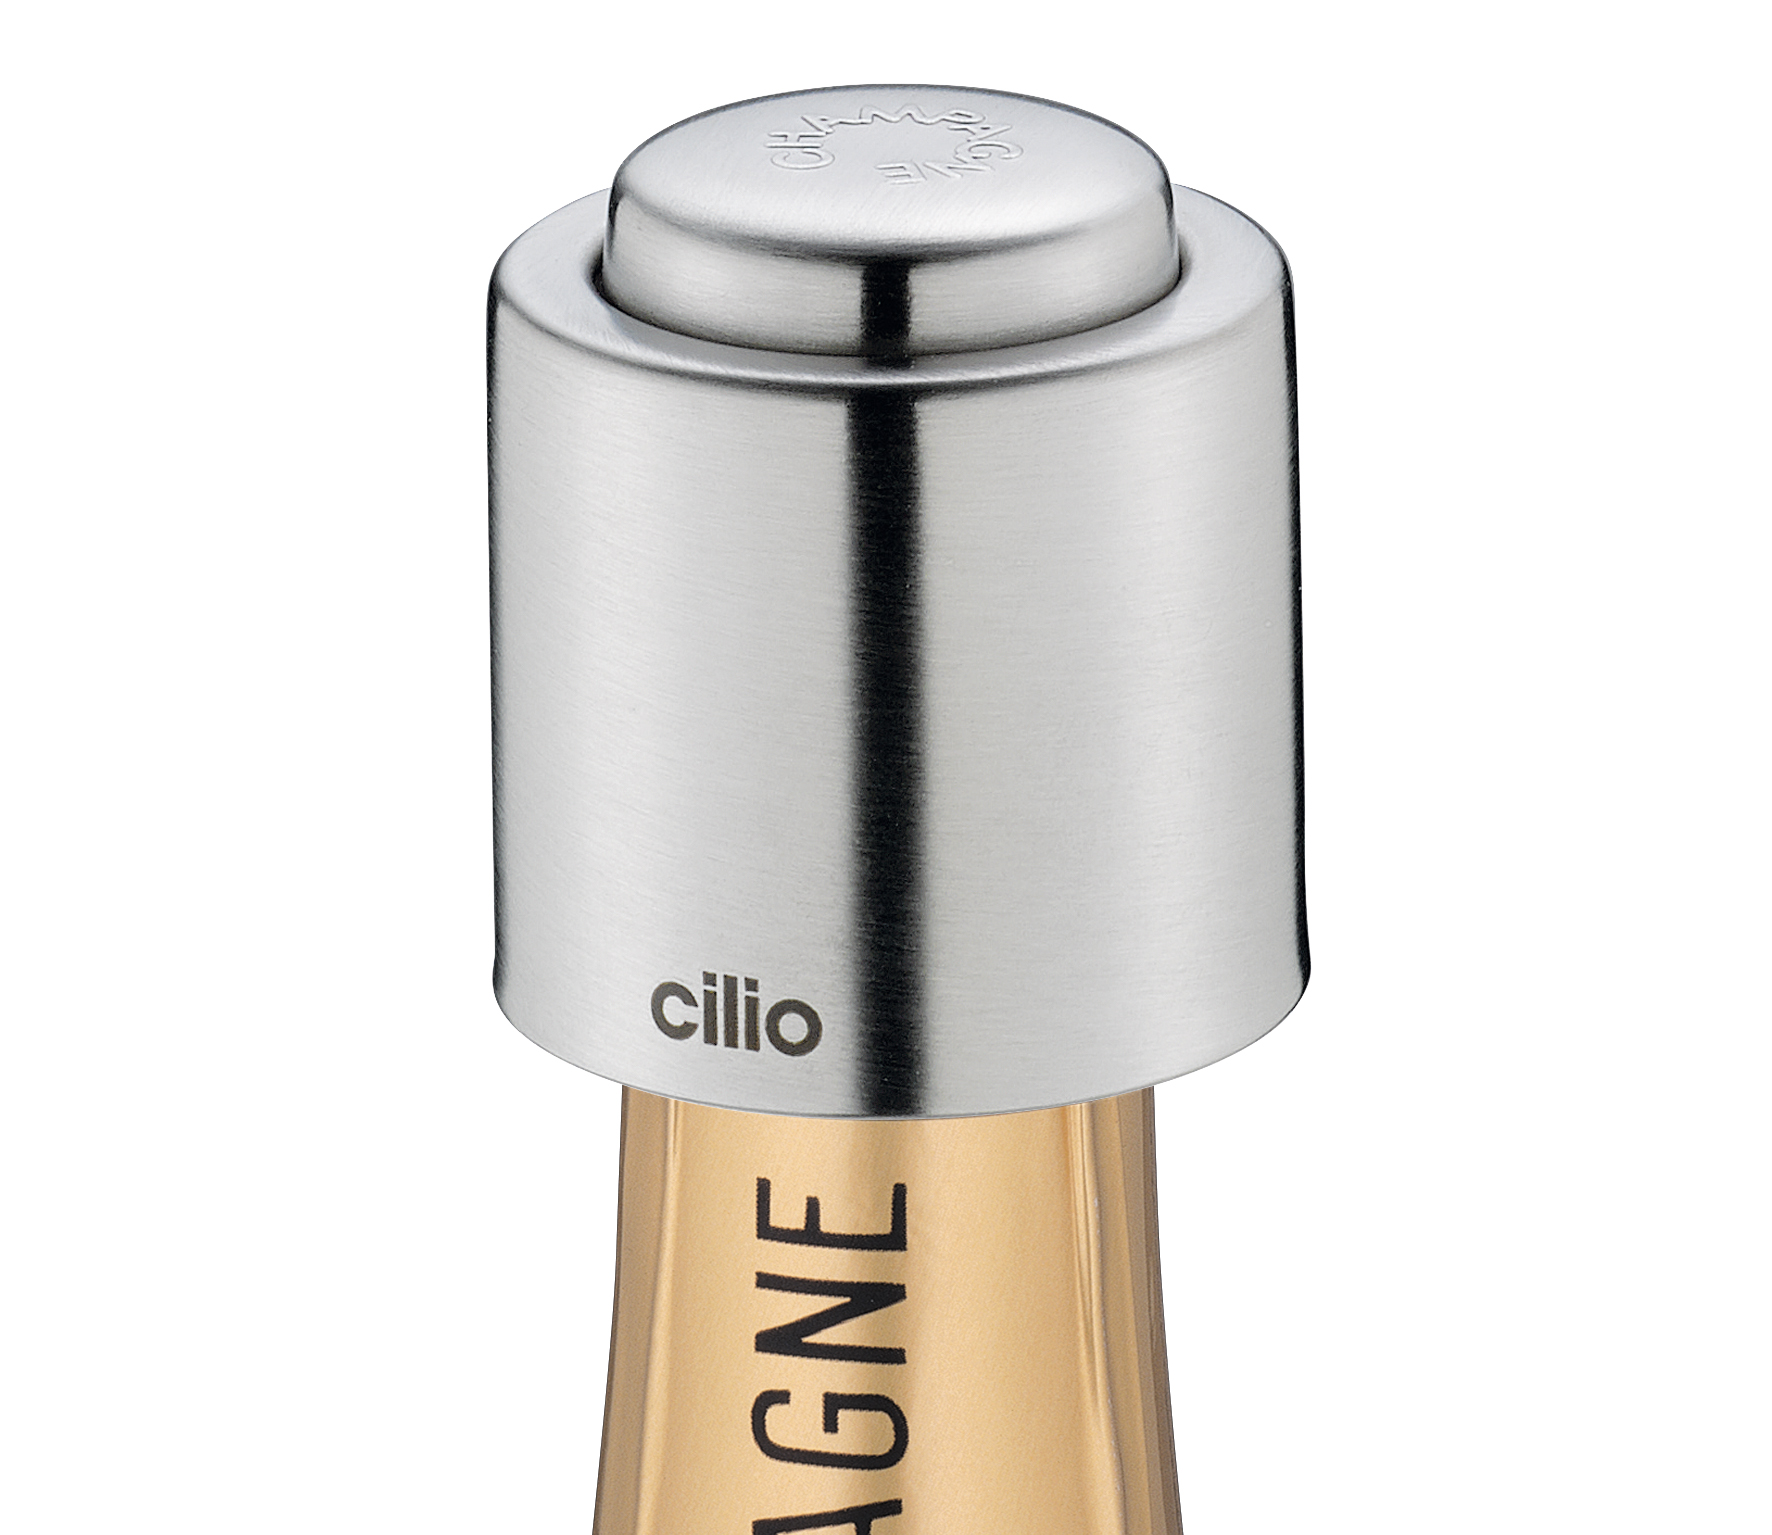 Cilio - Champagnerverschluss